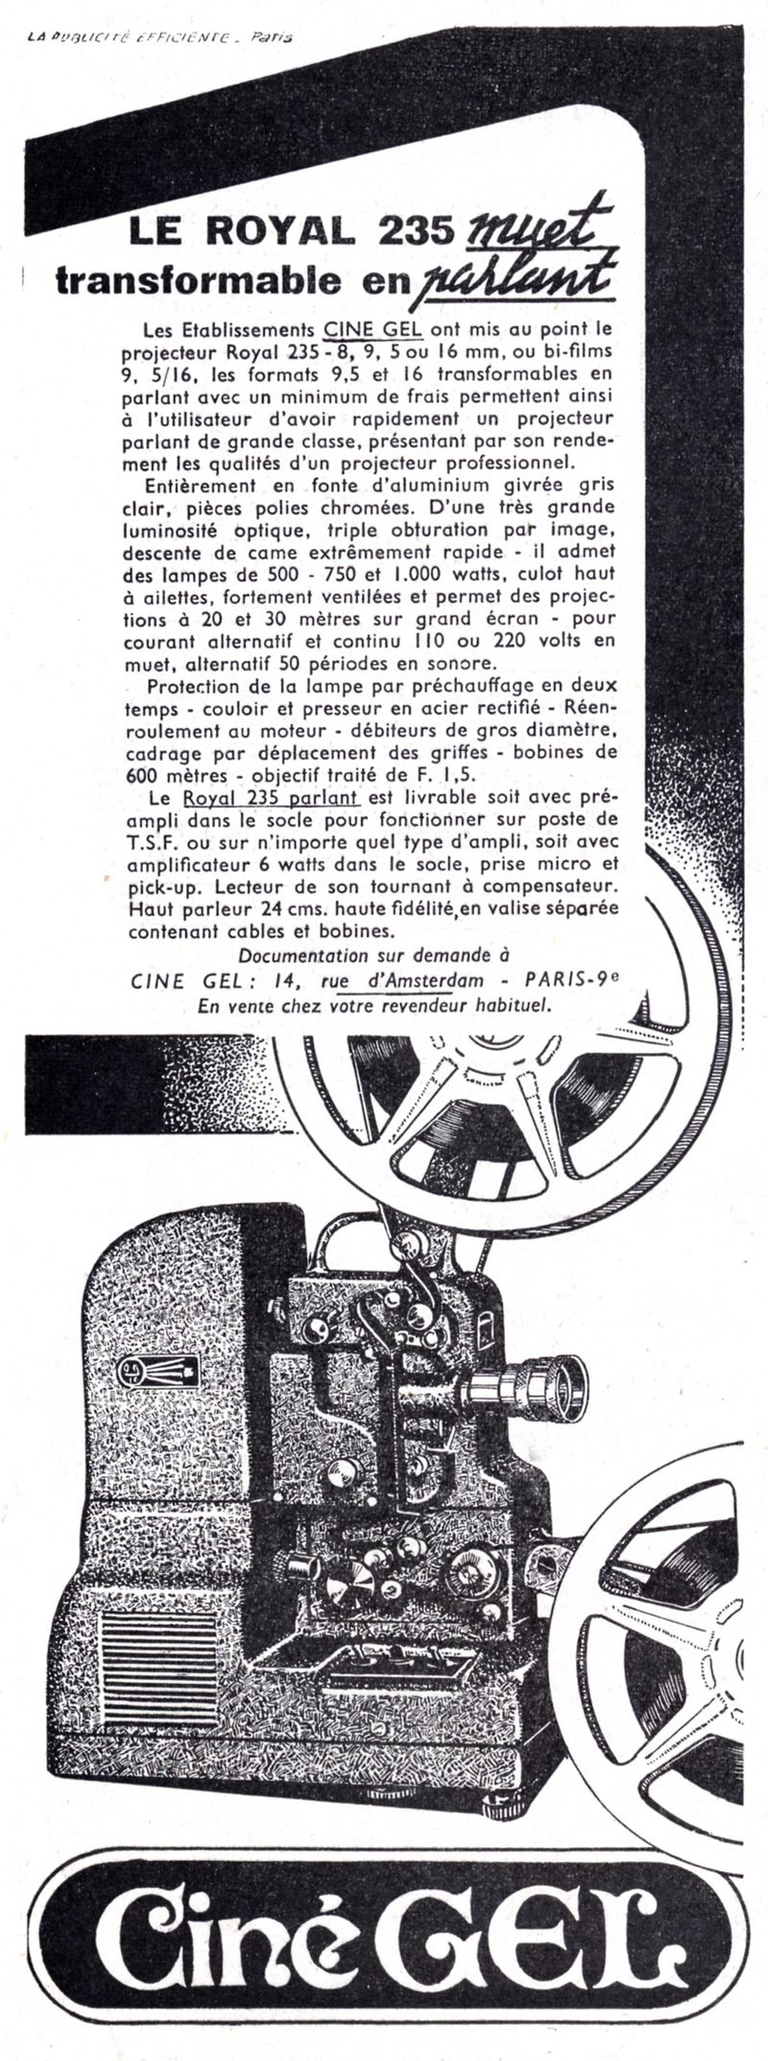 CinéGel - projecteur Royal 235 biformat 9,5 et 16 mm ou monoformat 8 mm, 9,5 mm ou 16 mm - octobre 1952